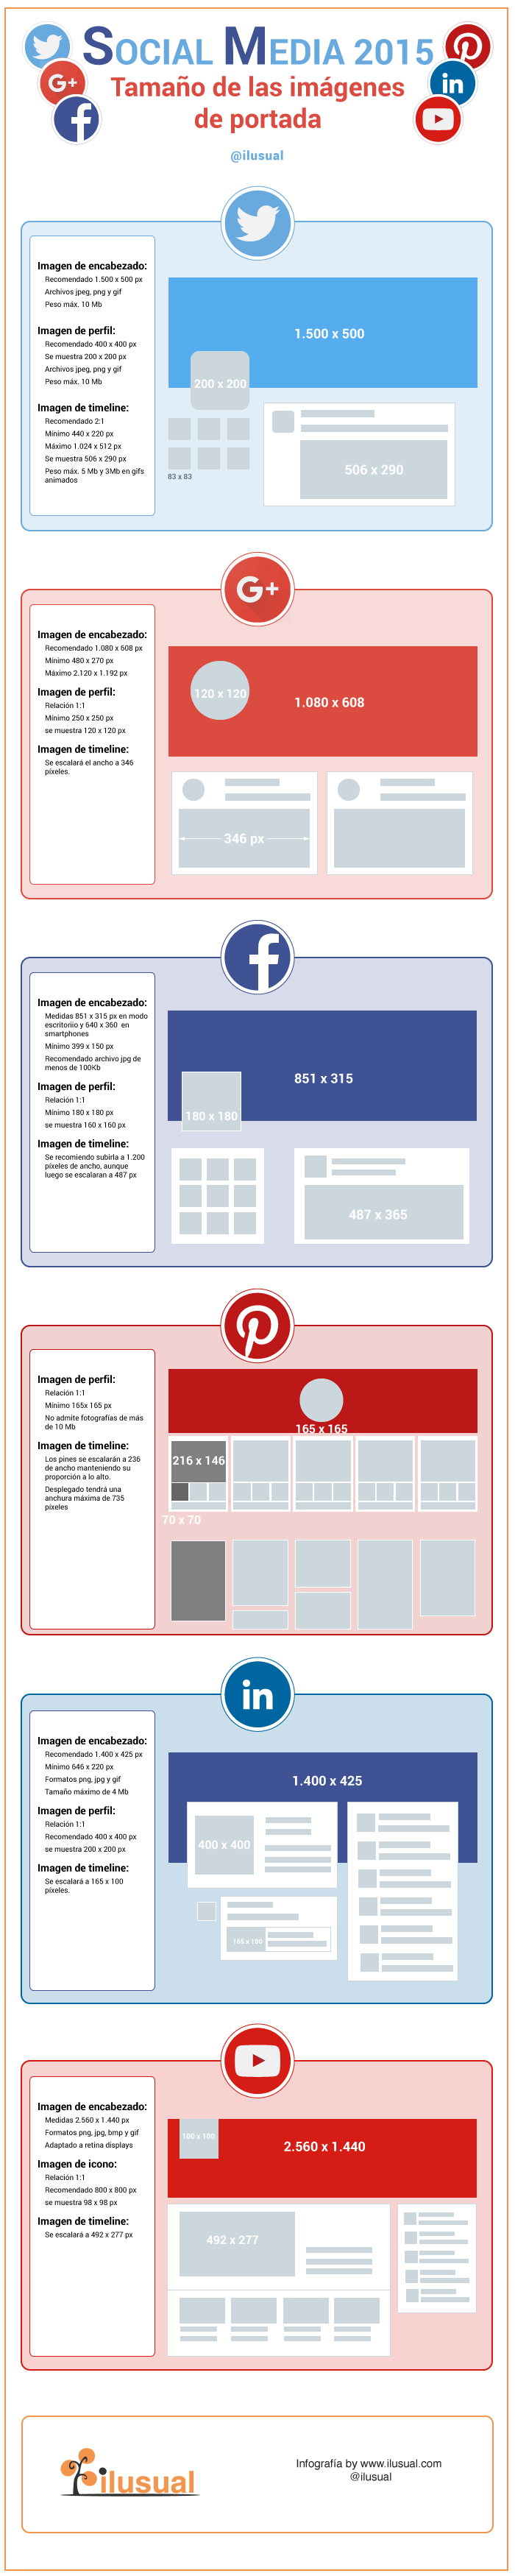 Infografia con las medidas y tamaños de las imágenes de portada de las redes sociales más importantes